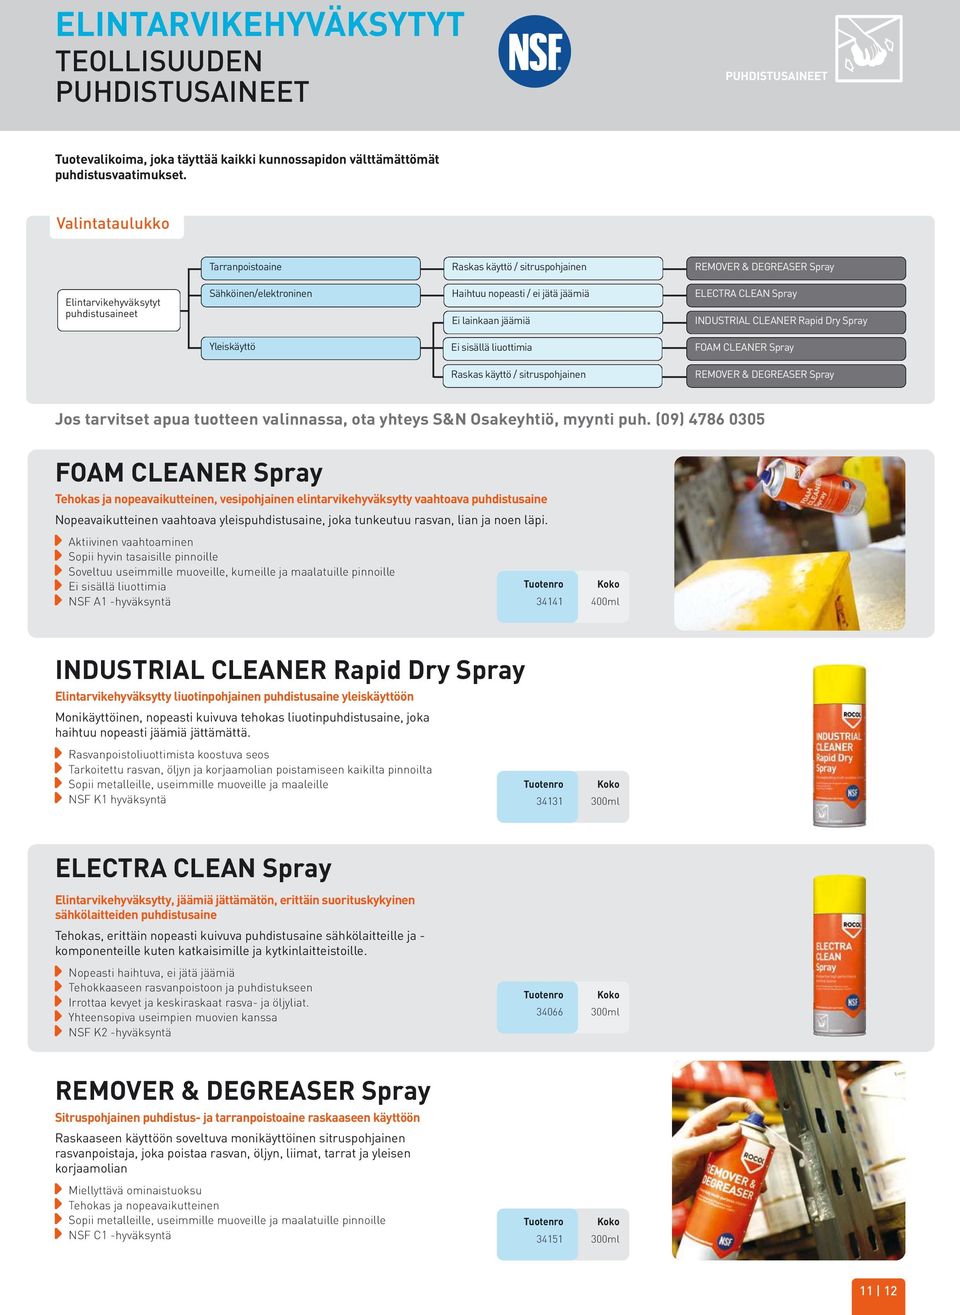 Spray Ei lainkaan jäämiä INDUSTRIAL CLEANER Rapid Dry Spray Yleiskäyttö Ei sisällä liuottimia Raskas käyttö / sitruspohjainen FOAM CLEANER Spray REMOVER & DEGREASER Spray FOAM CLEANER Spray Tehokas